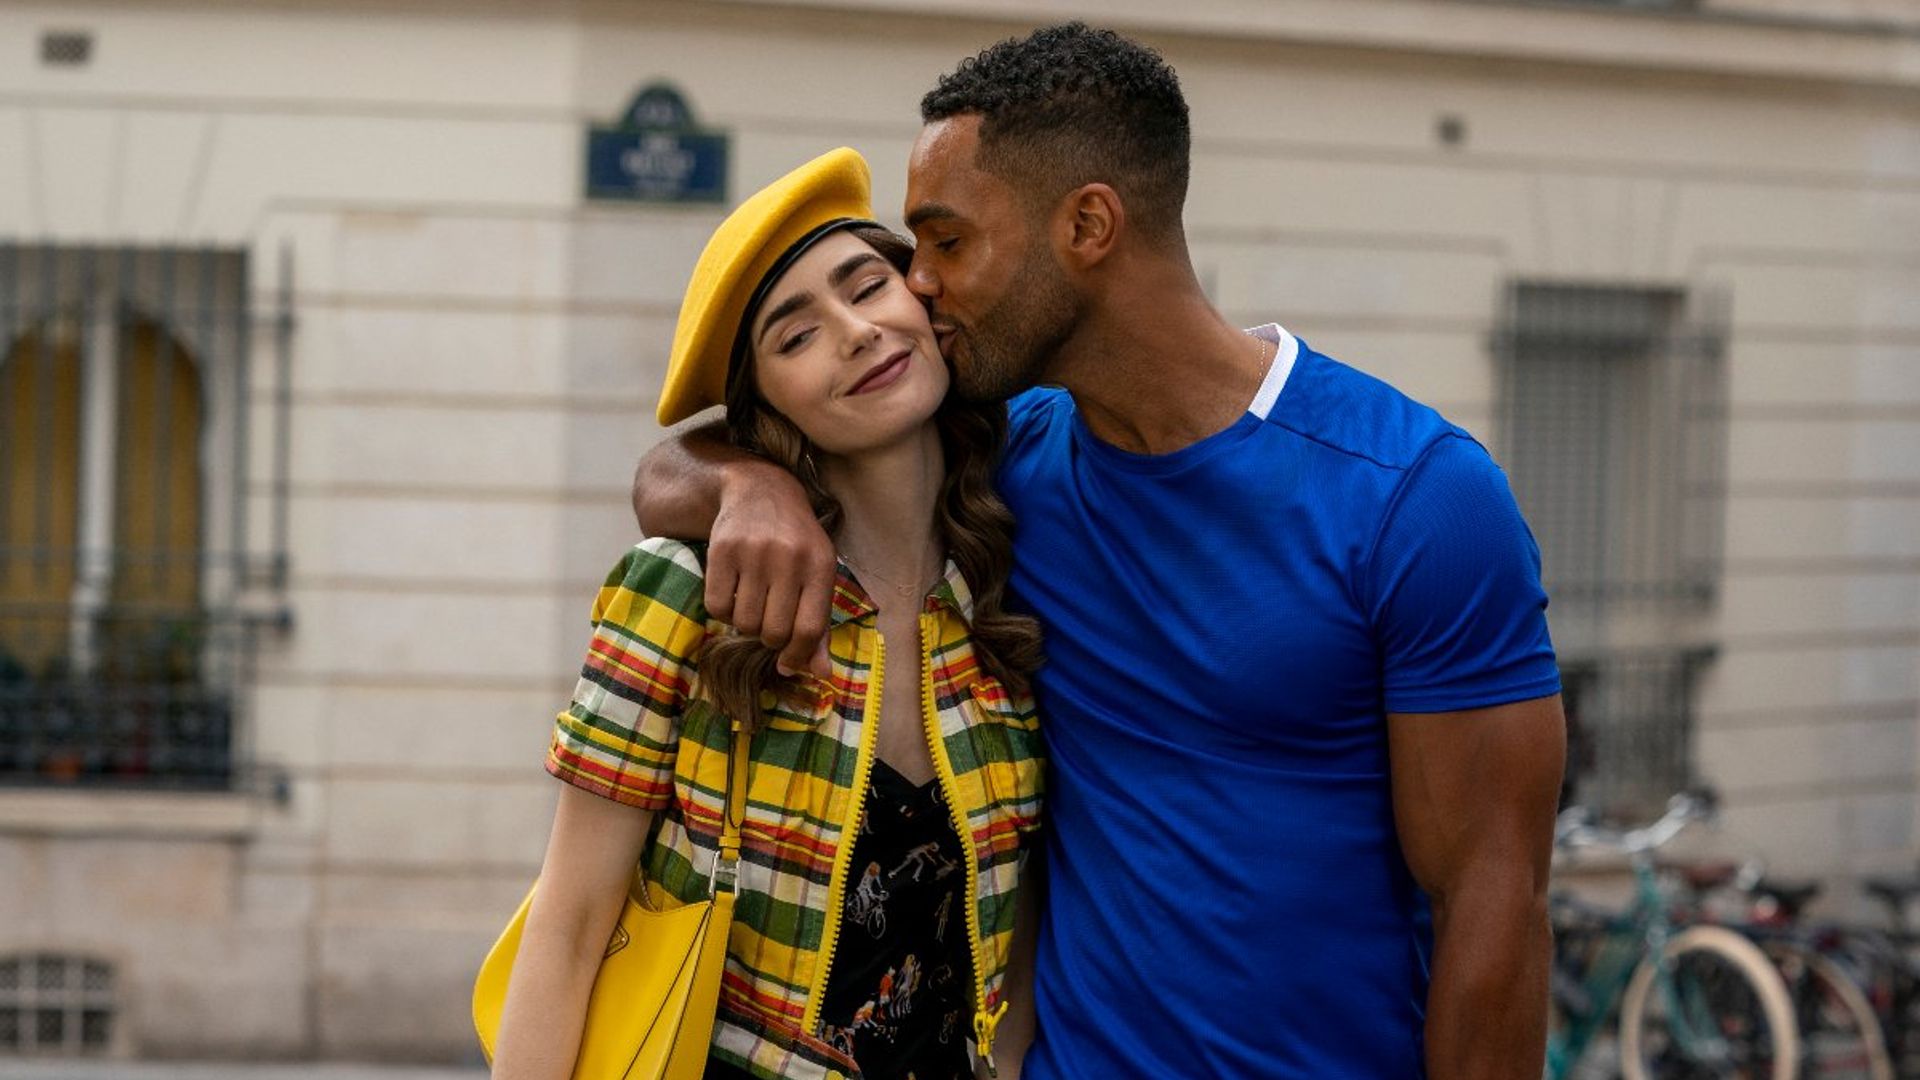 Emily in Paris creator drops major hint at season three romance